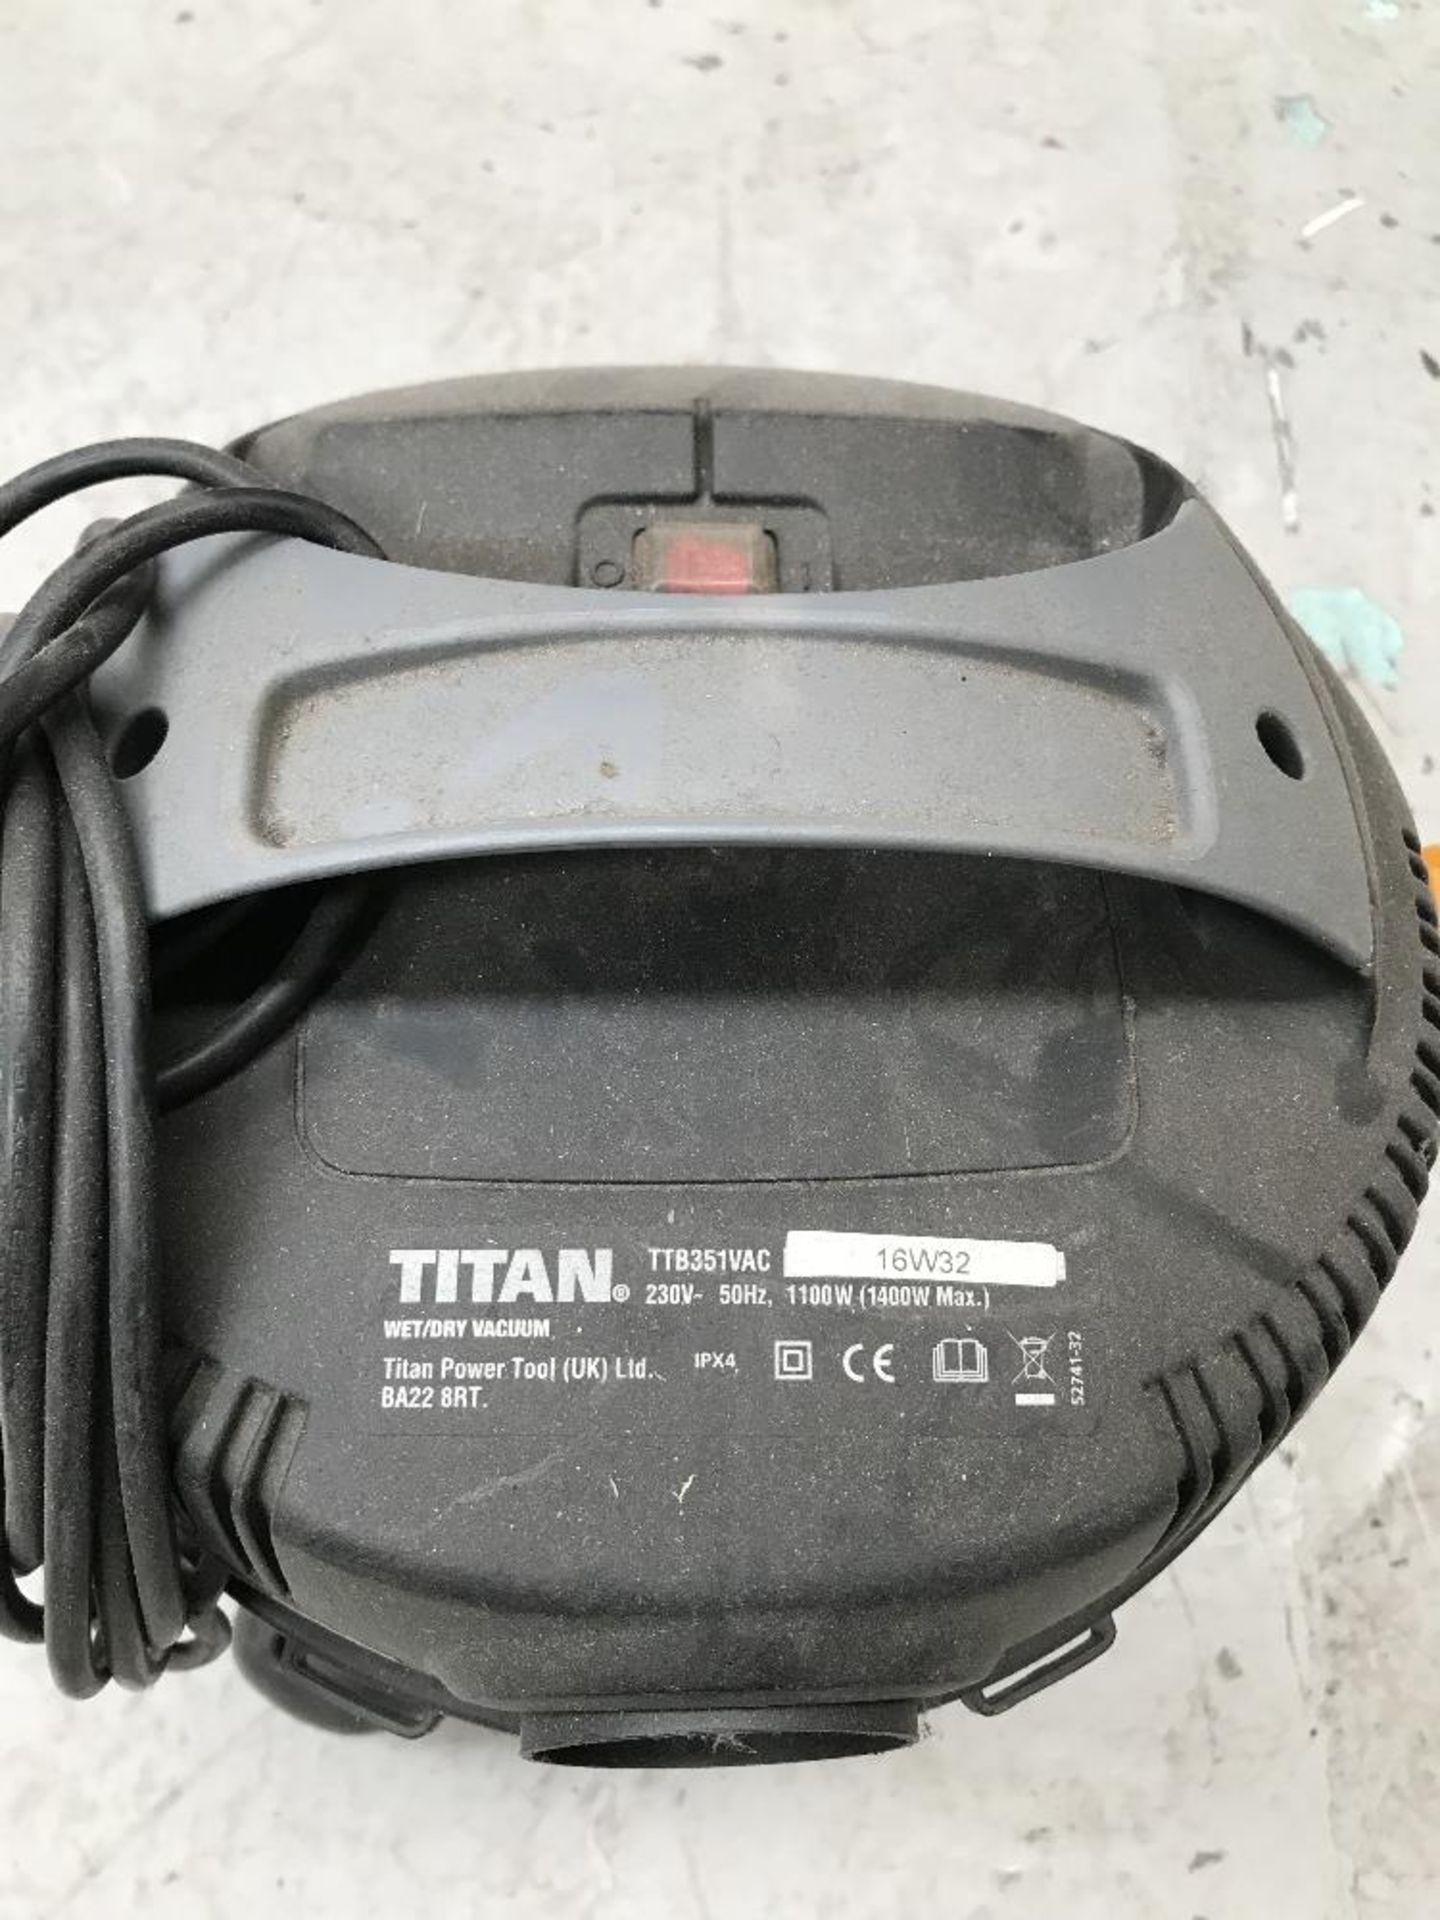 Titan Wet/Dry Vacuum - Image 2 of 2